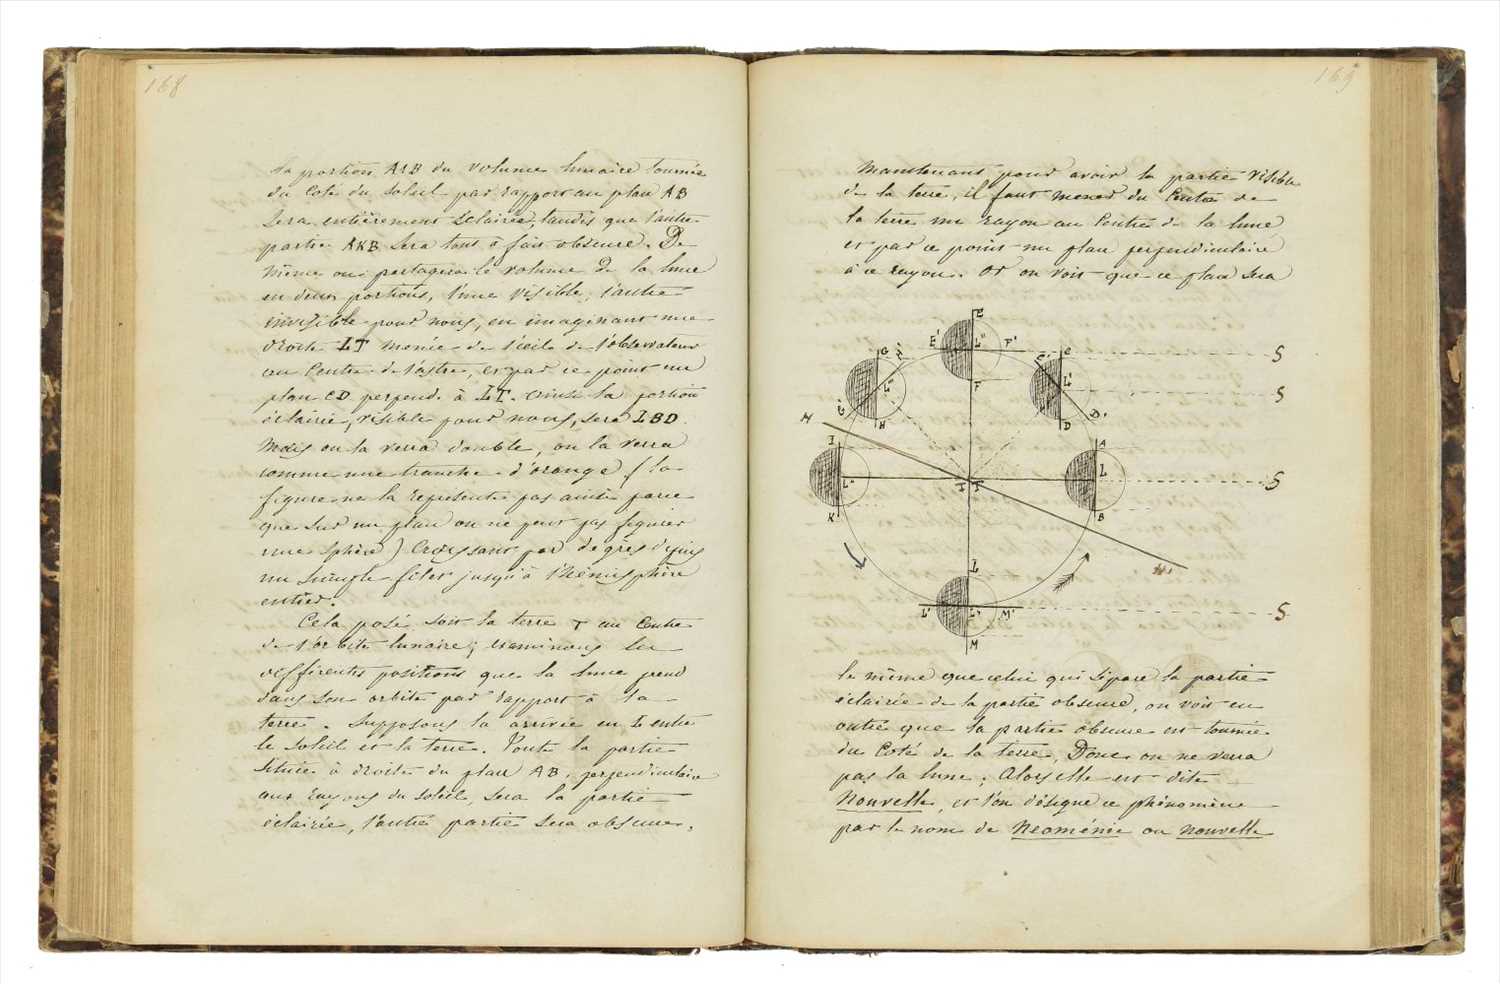 Lot 391 - Cosmography. Cours de Cosmographie (d'apres Mr Hauser), Dufort, Lycee de Lyon, 1850-51